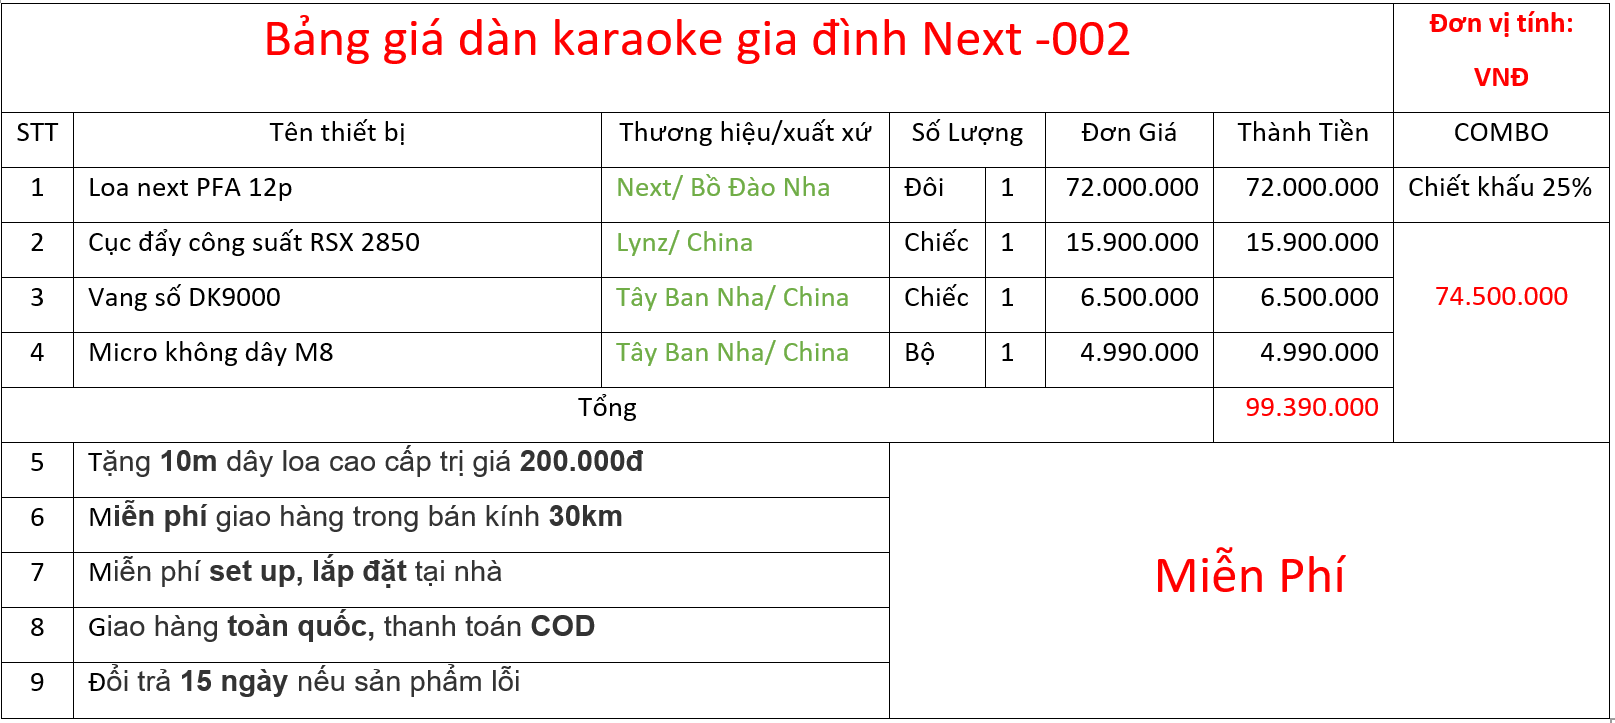 Bảng giá bộ dàn Next -002